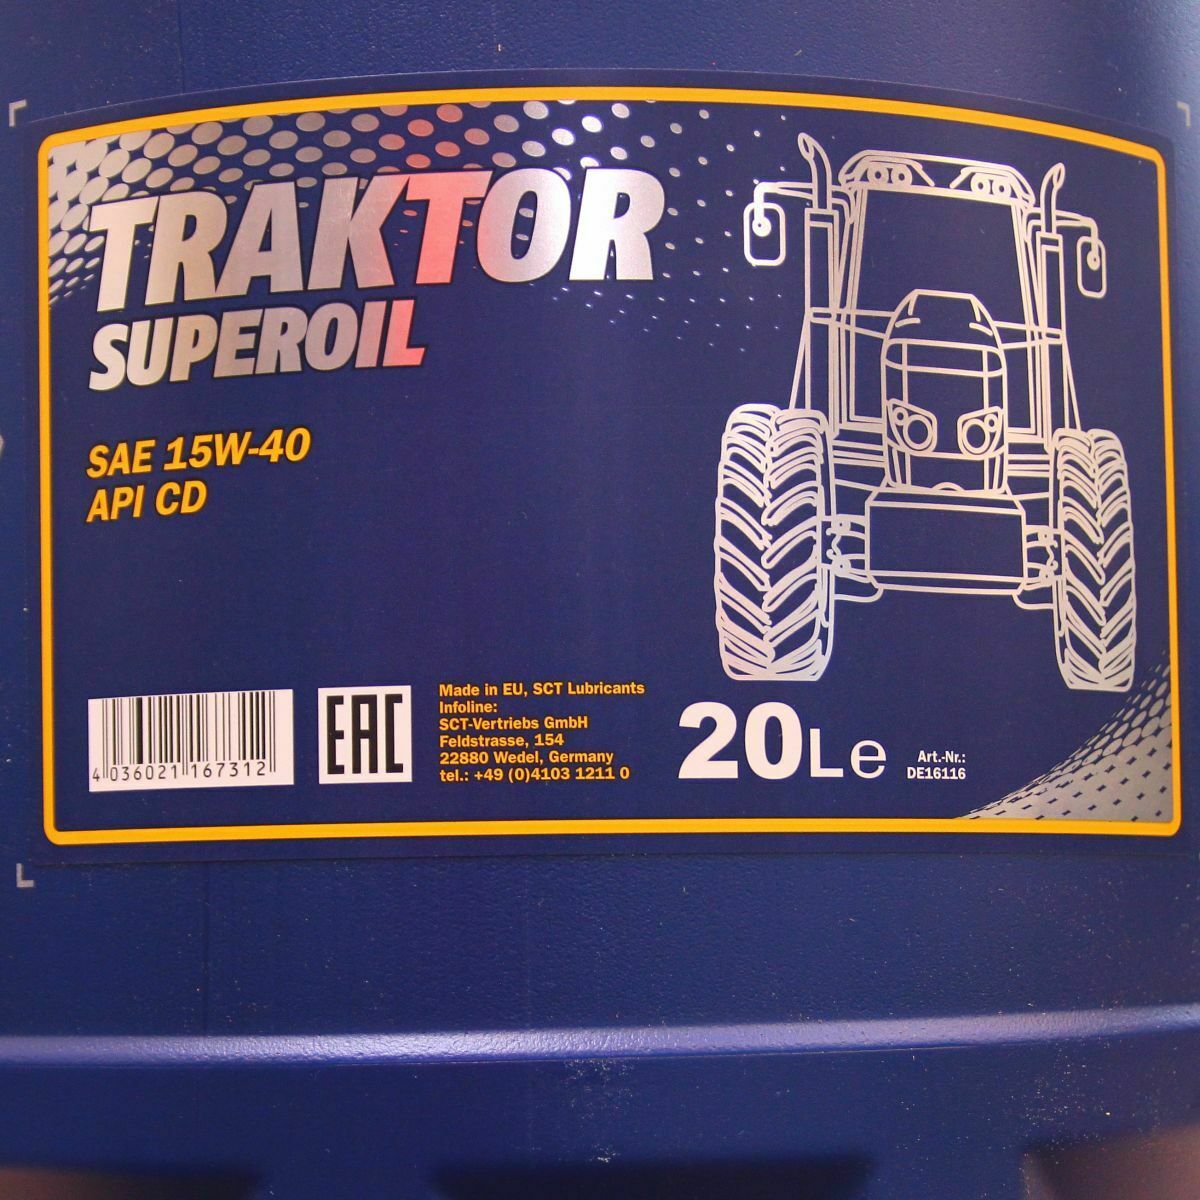 40 Liter MANNOL TRAKTOR SUPEROIL 15W-40 Motoröl Traktoröl API SG CD